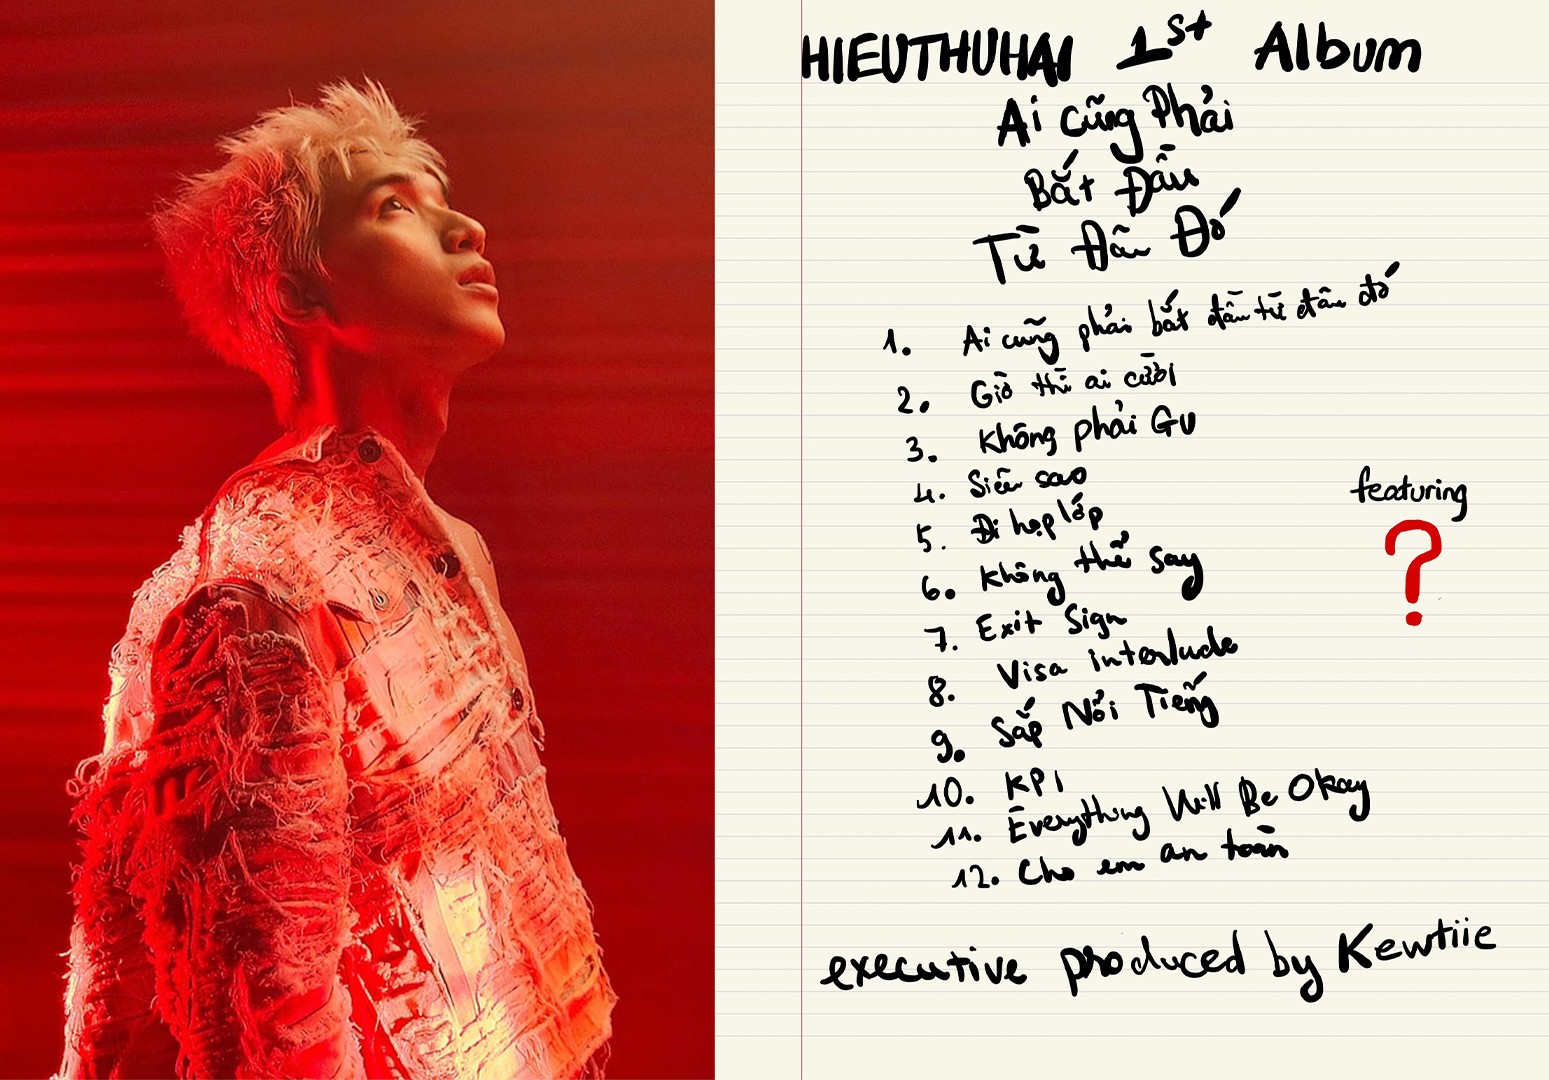 Danh sách các bài hát của HIEUTHUHAI trong album sắp tới